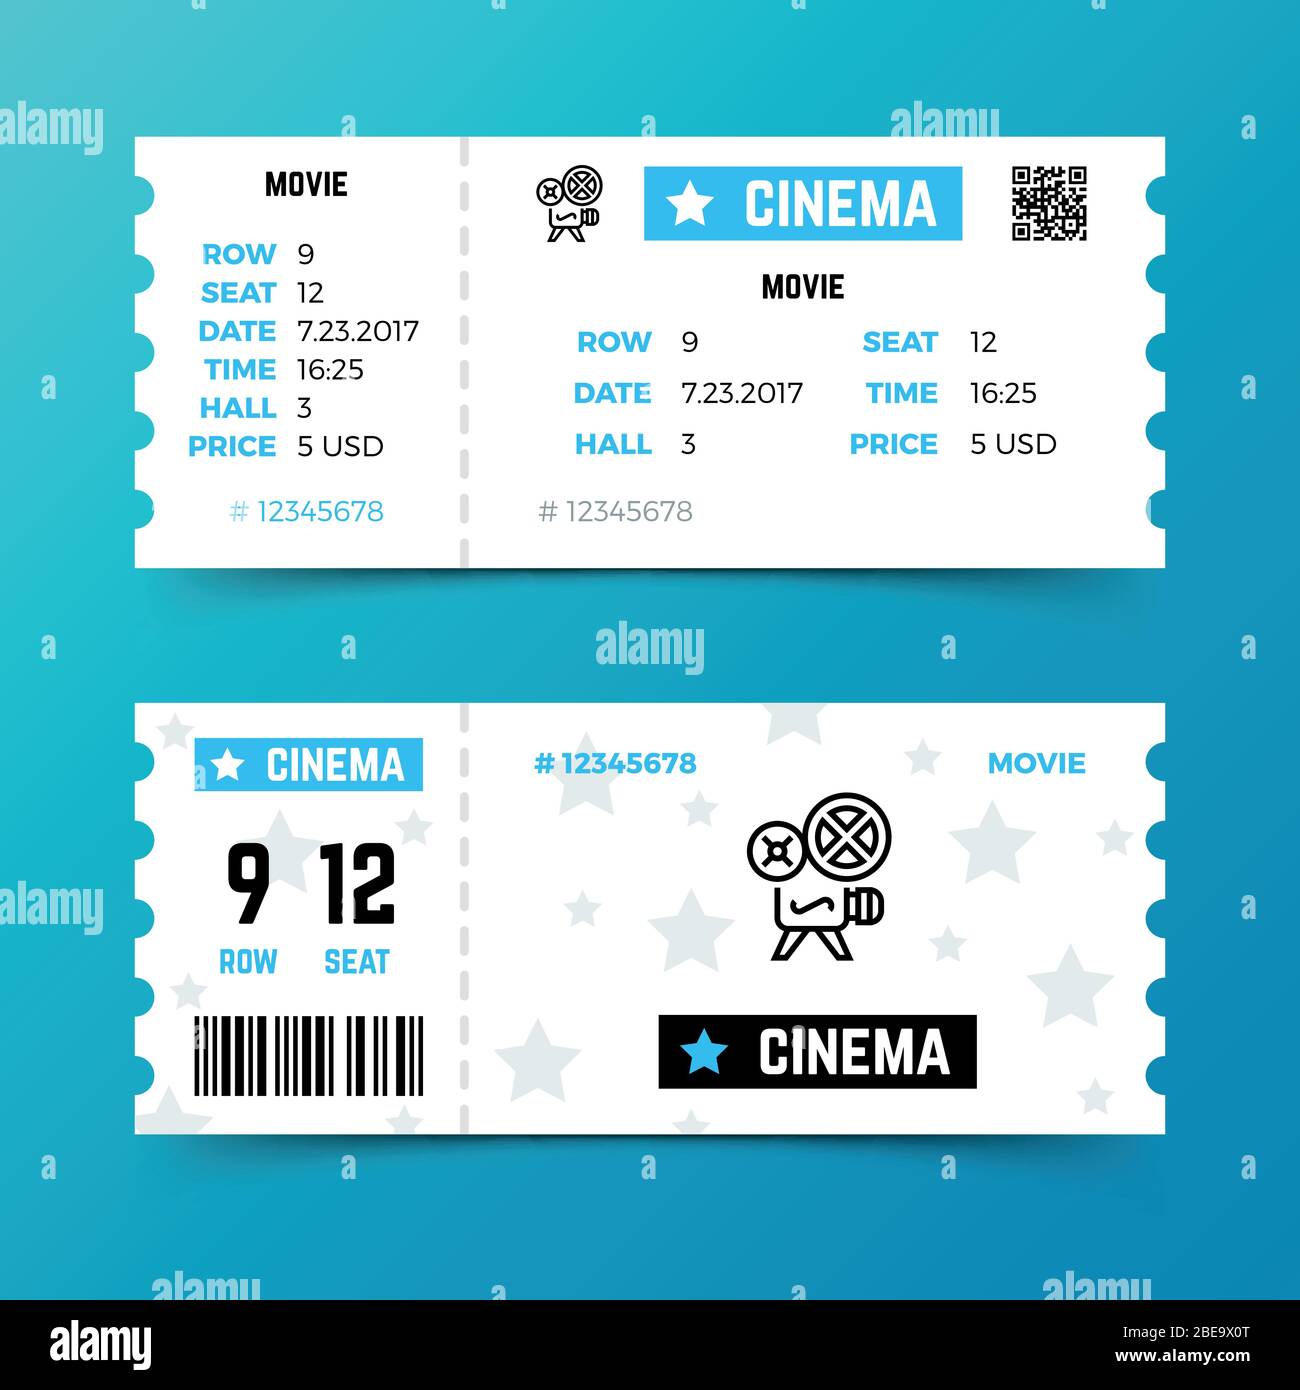 Kinokarte Vektor Vorlage im modernen minimalistischen Stil. Design der Eintrittskarte für Kinofilm, Unterhaltung Eingang Illustration Stock Vektor